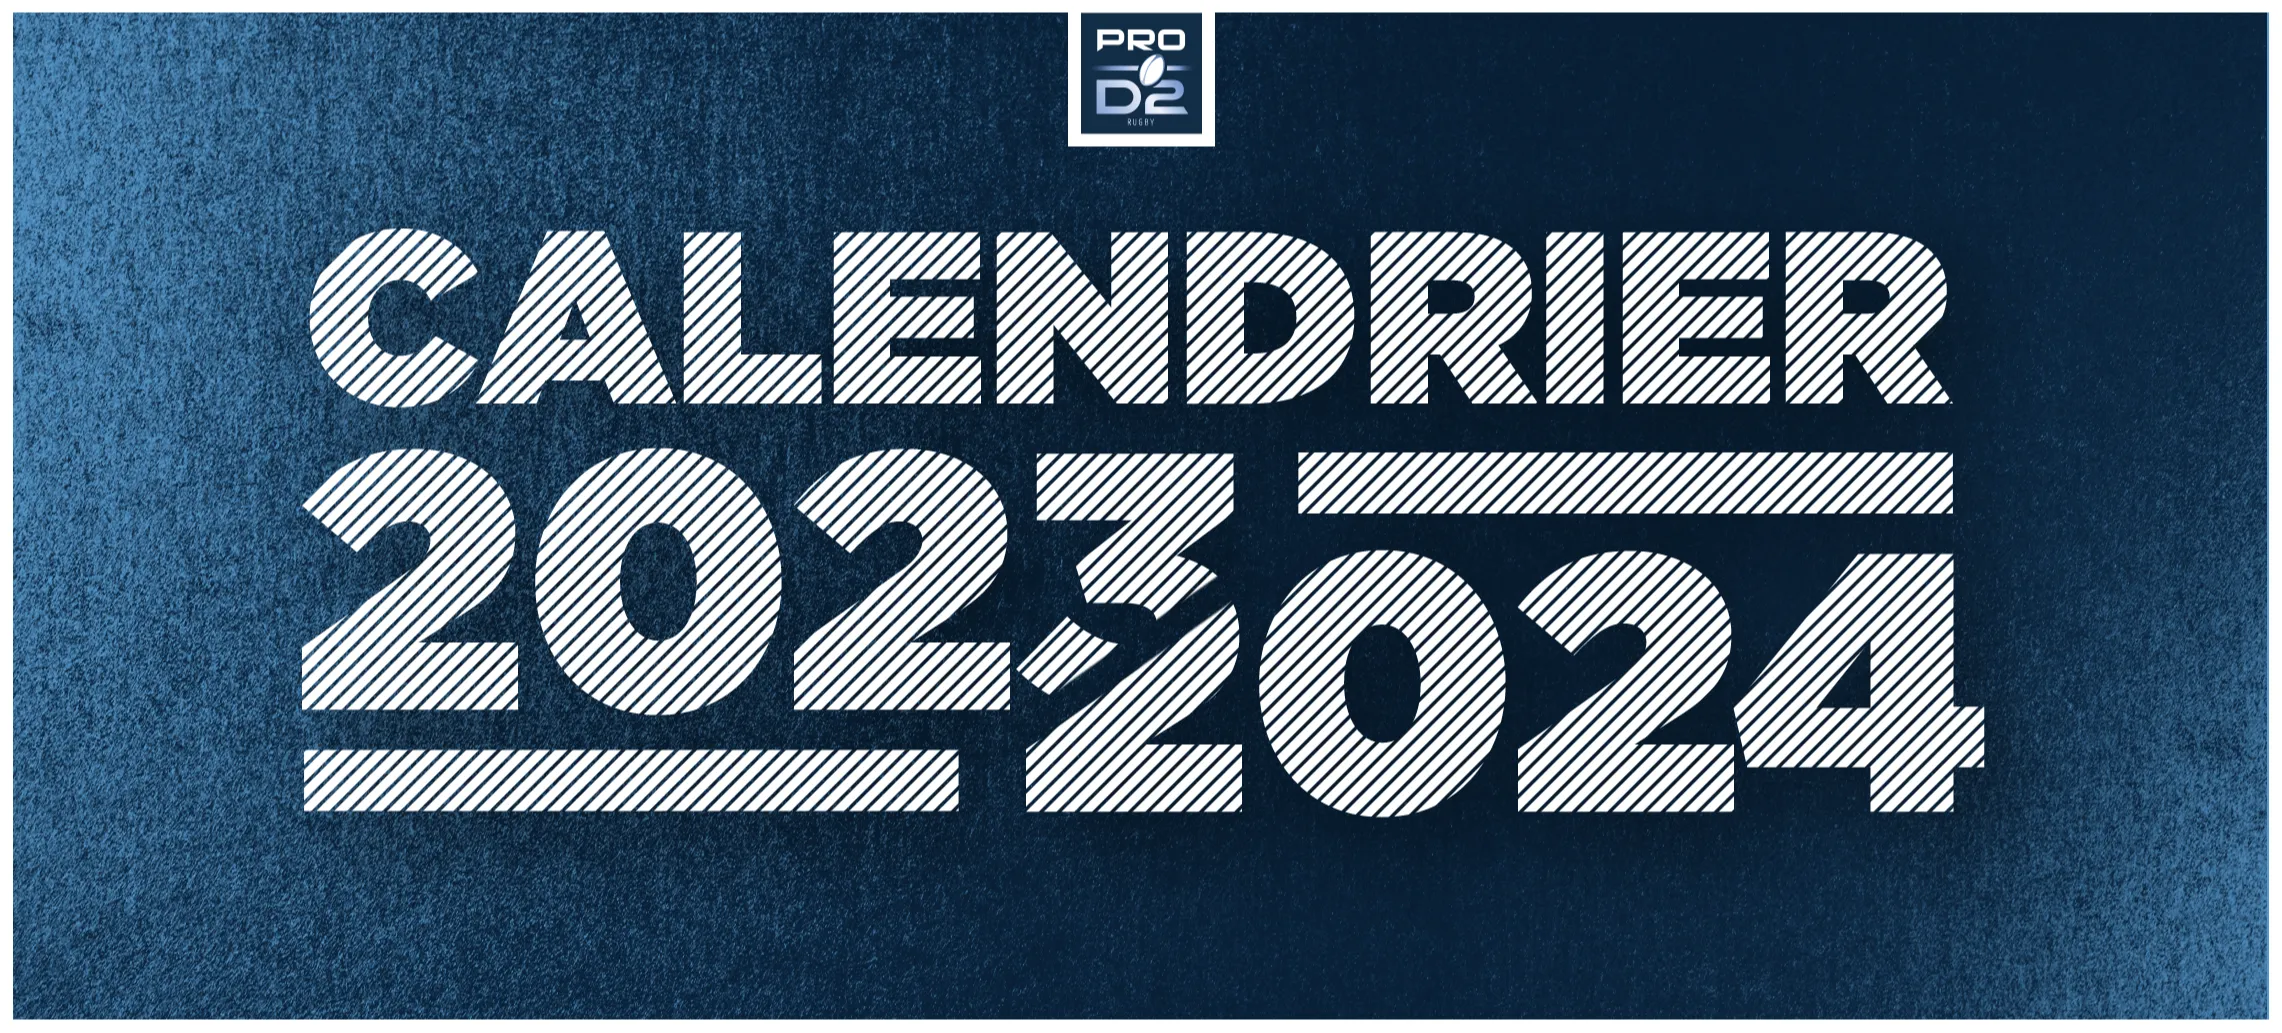 PRO D2: Le calendrier de la saison 2023/2024